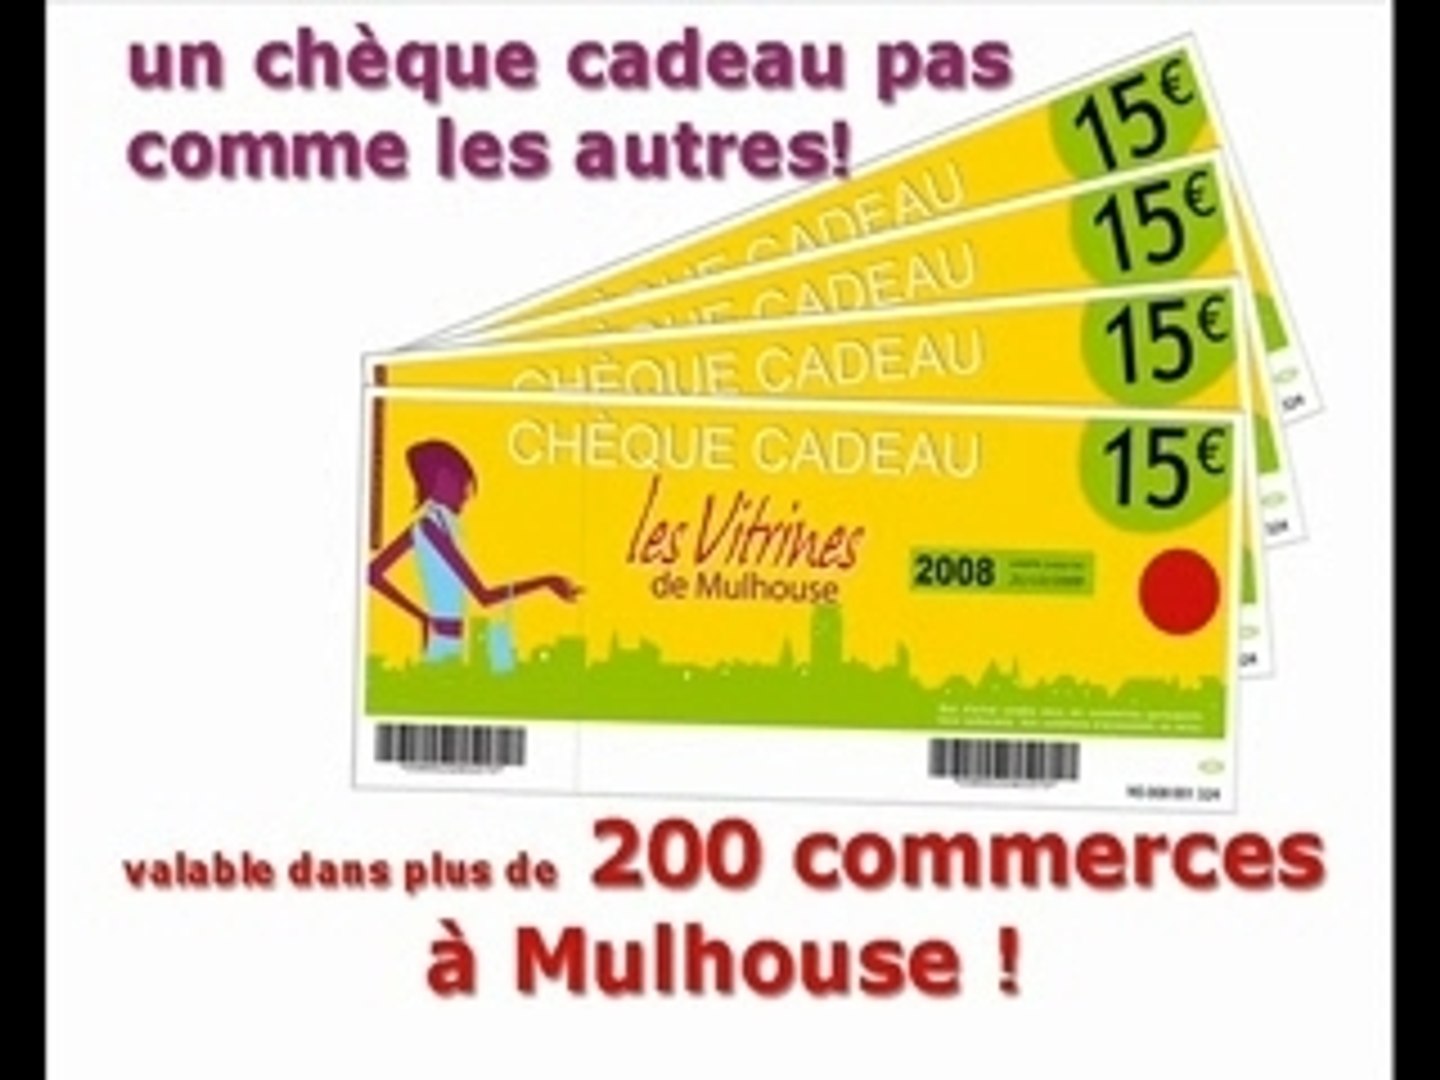 Cheques-cadeaux-vitrines-de-mulhouse - Vidéo Dailymotion